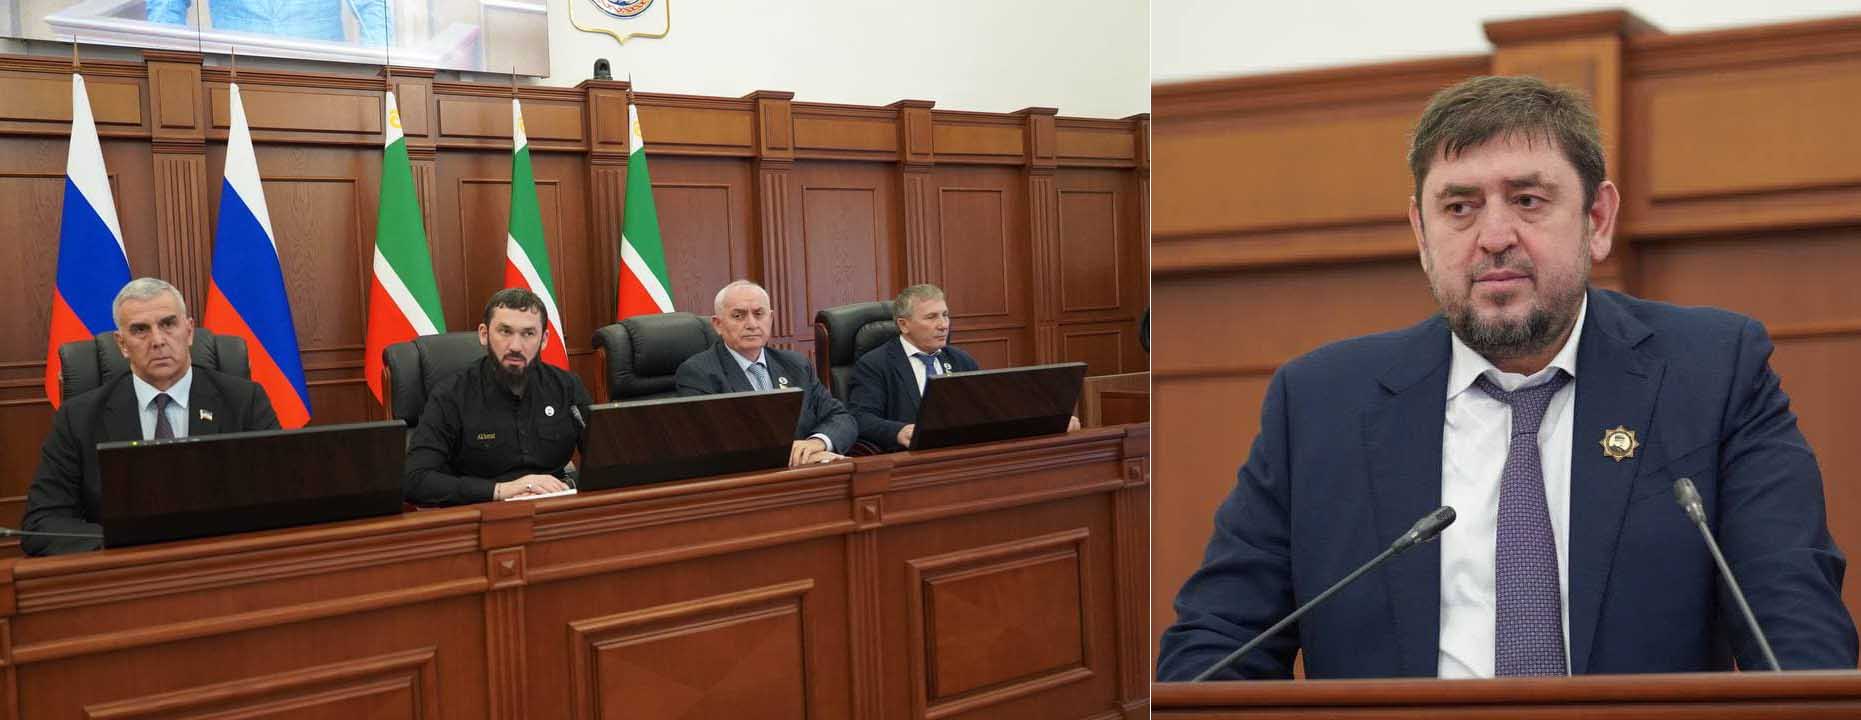 Денилбек Абдулазизов принял участие в пленарном заседании Парламента Чеченской Республики 